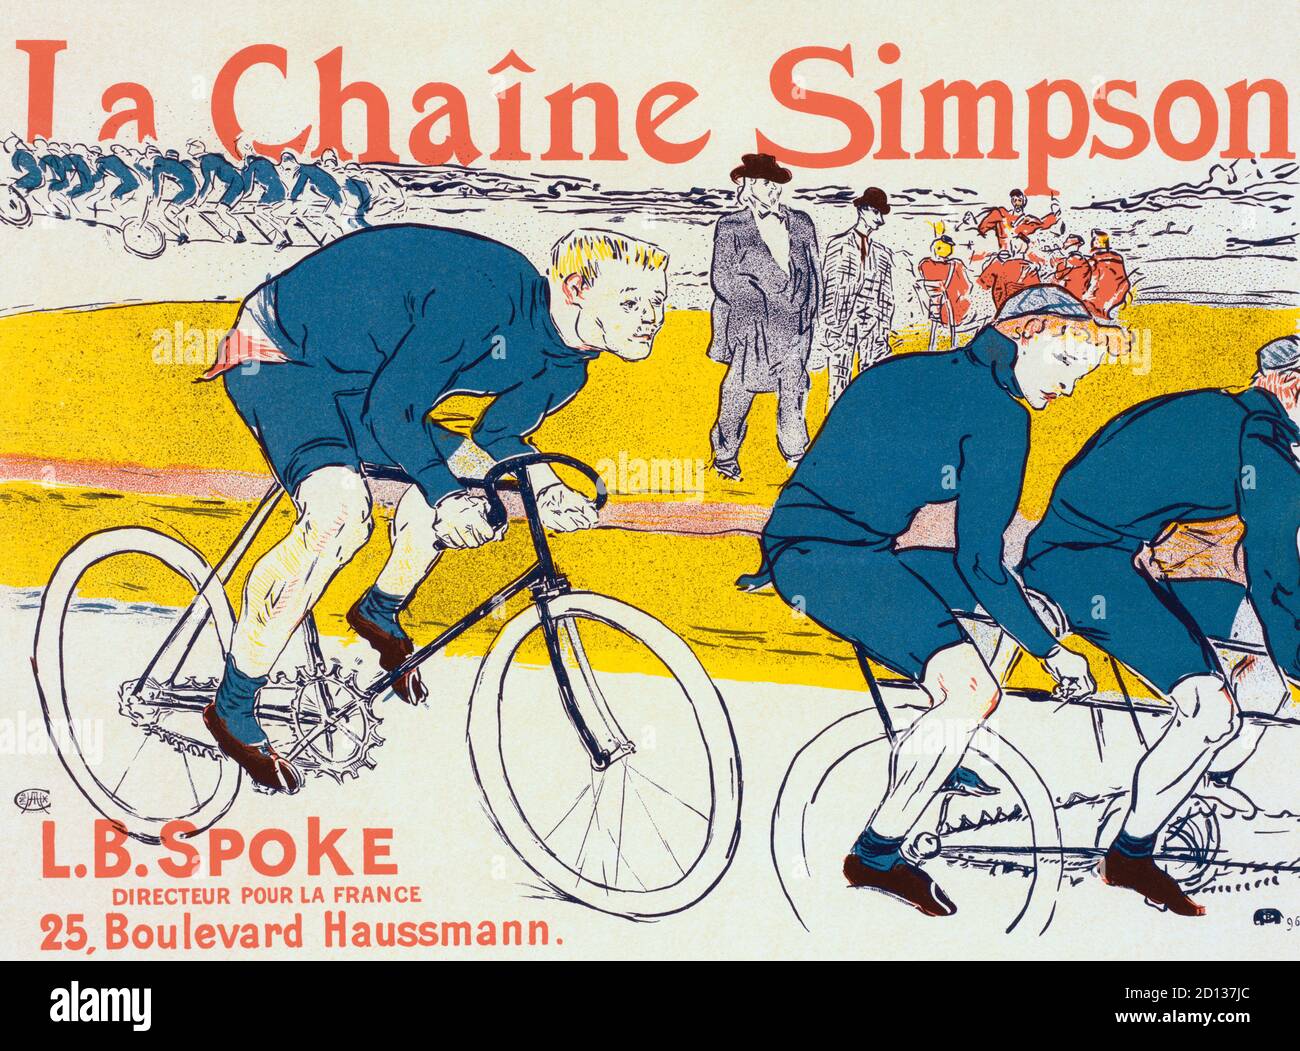 Plakat für La Chaîne Simpson oder die Simpson-Kette, die der französische Künstler Henri de Toulouse-Lautrec 1896 schuf. Die Simpson-Kette war eine neue Art von Fahrradkette, die 1895 vom Engländer William Spears Simpson erfunden wurde. Die Hauptfigur im Plakat zeigt Constant Huret, einen französischen Radsportmeister. Stockfoto